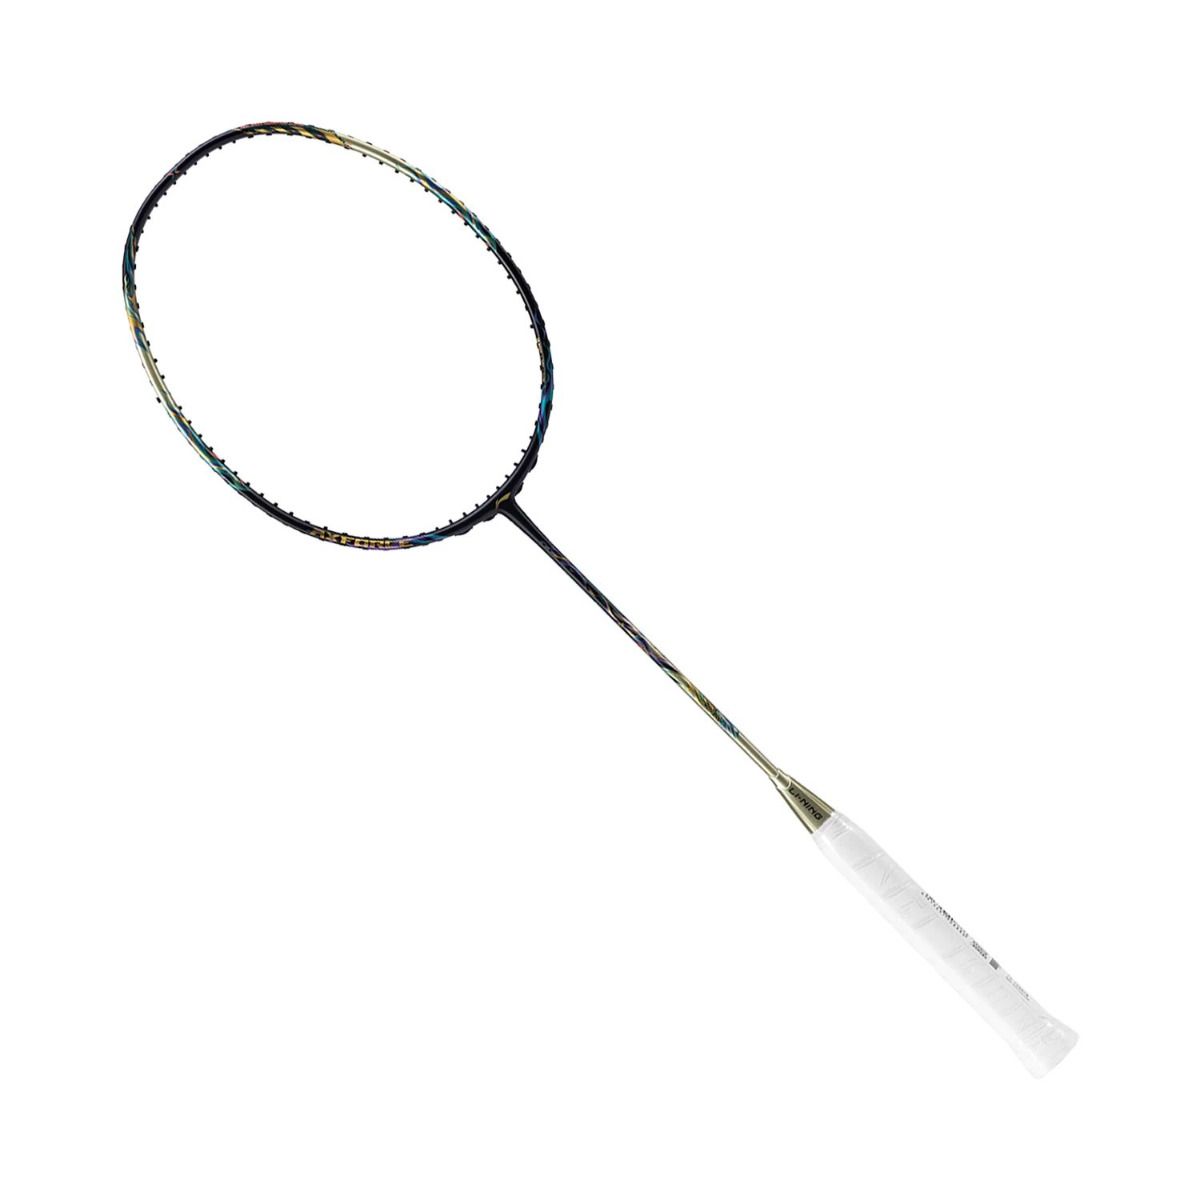 Lining axforce 100 badminton racket 